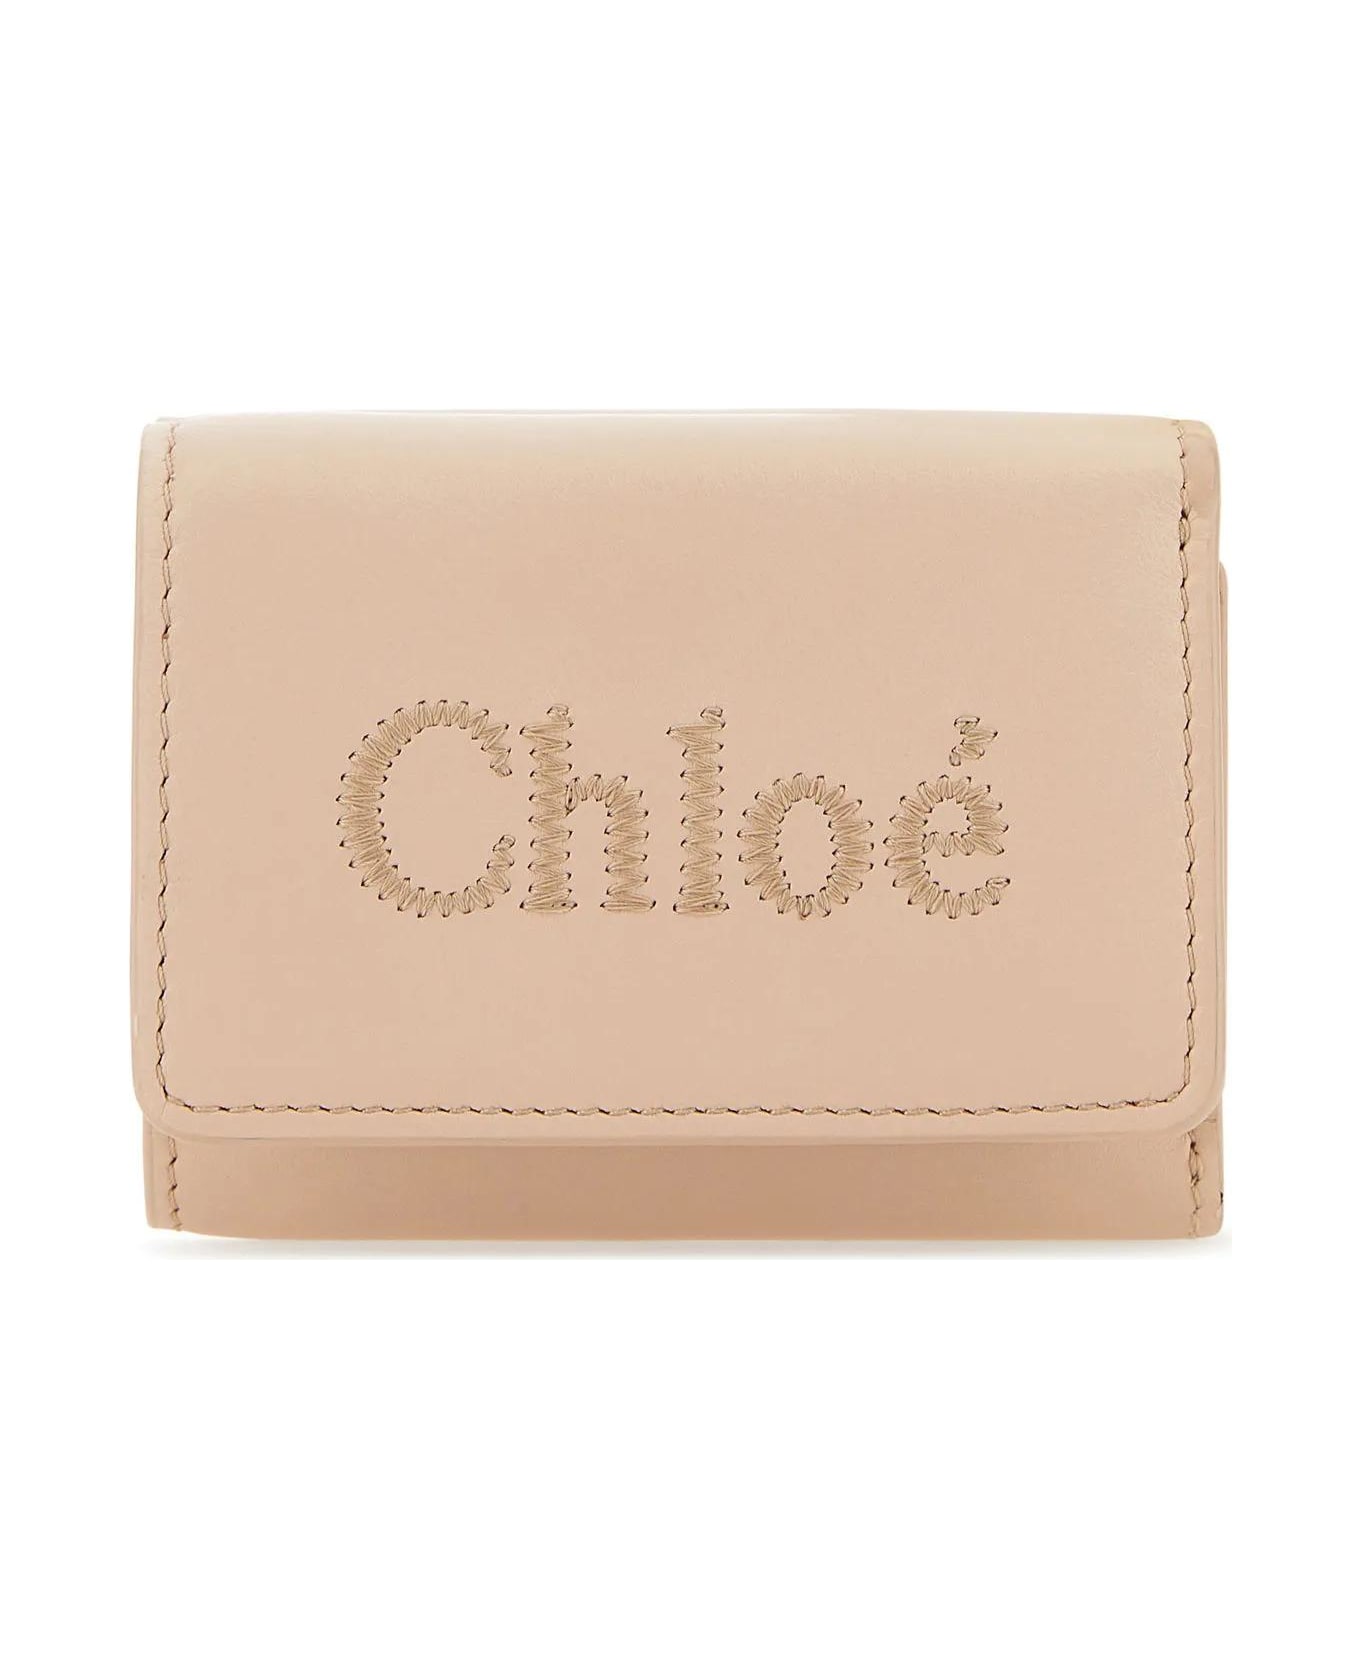 Chloé Powder Pink Leather Wallet - Powder